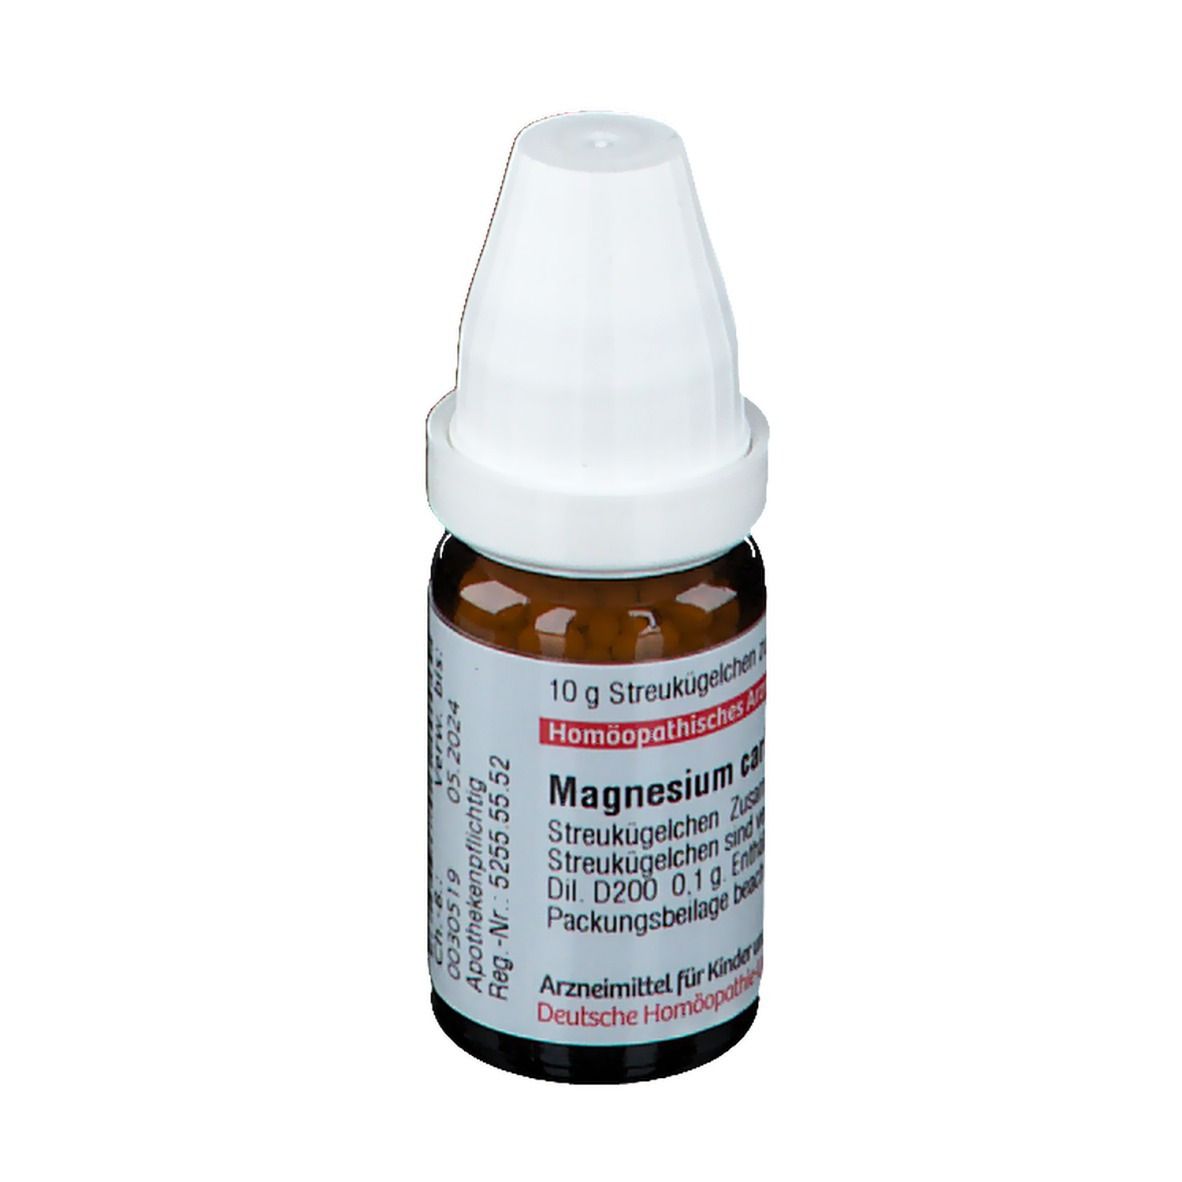 DHU Magnesium Carbonicum D200